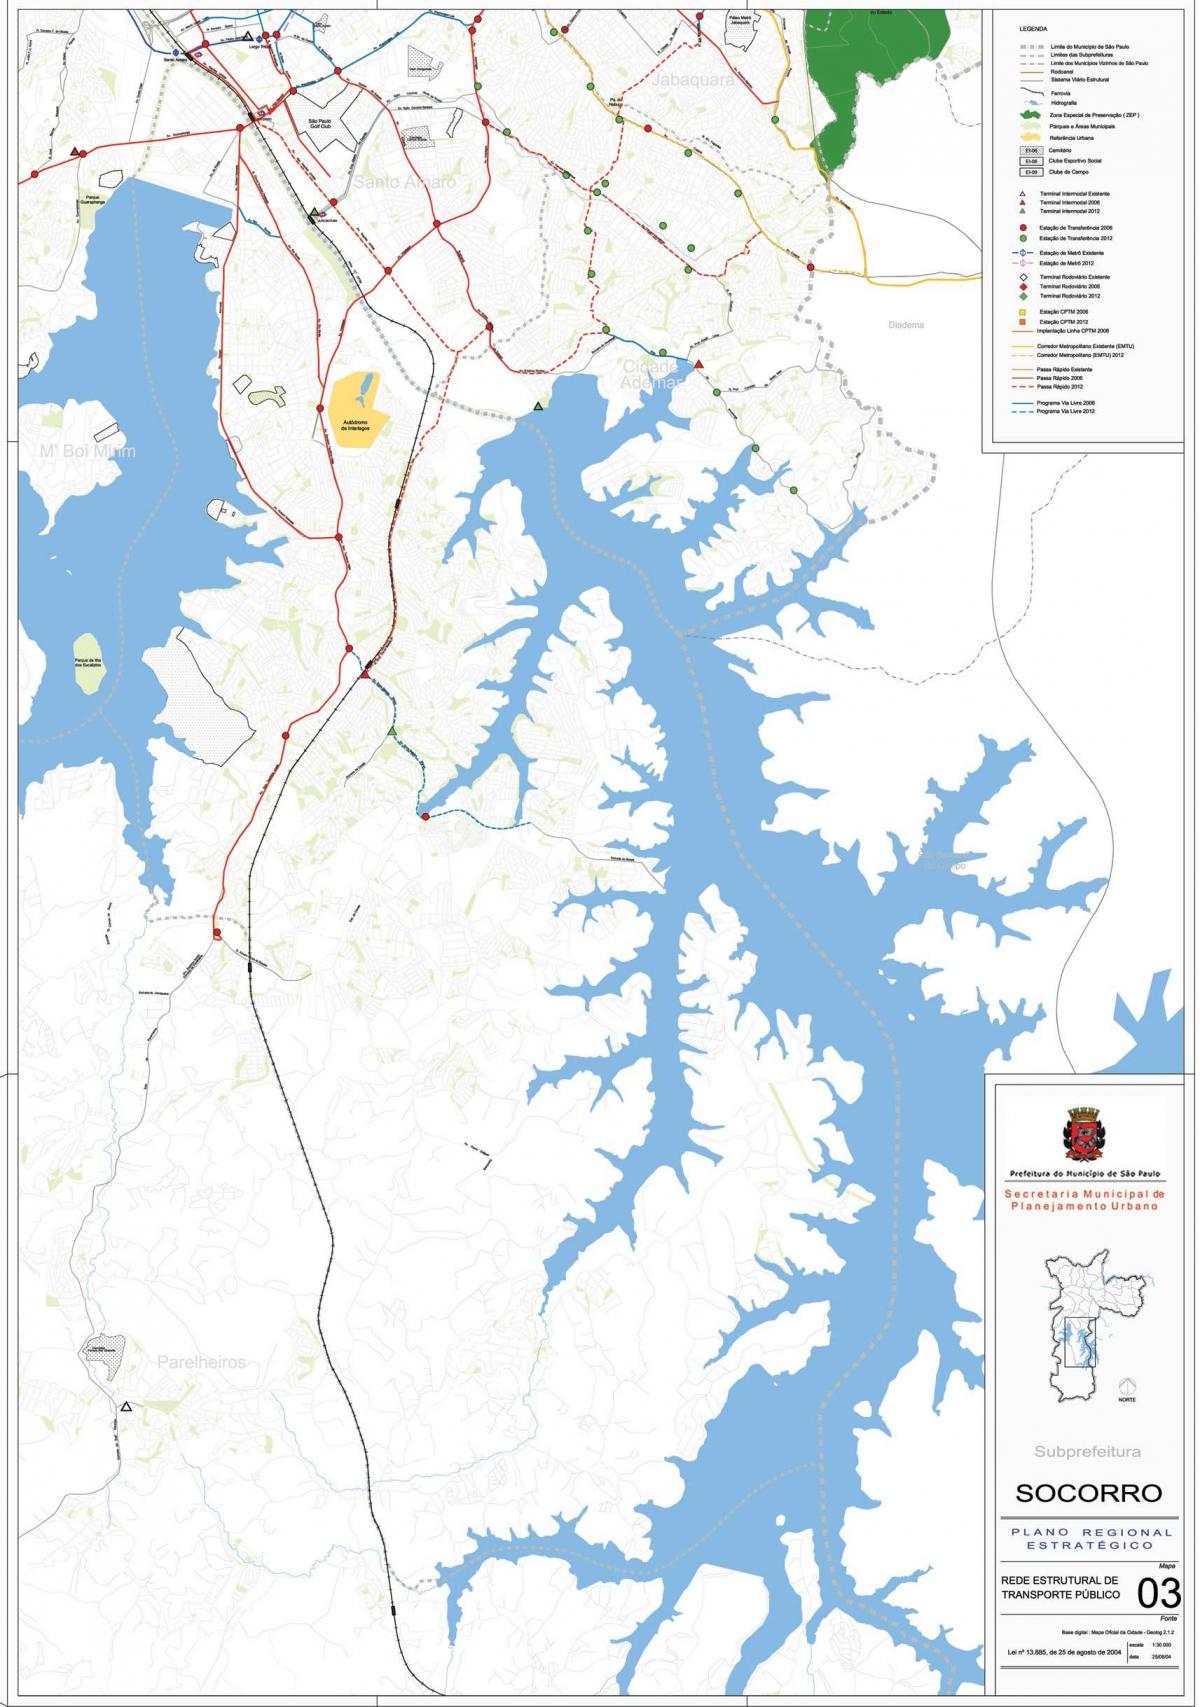 מפה של Capela לעשות סוקורו סאו פאולו - תחבורה ציבורית